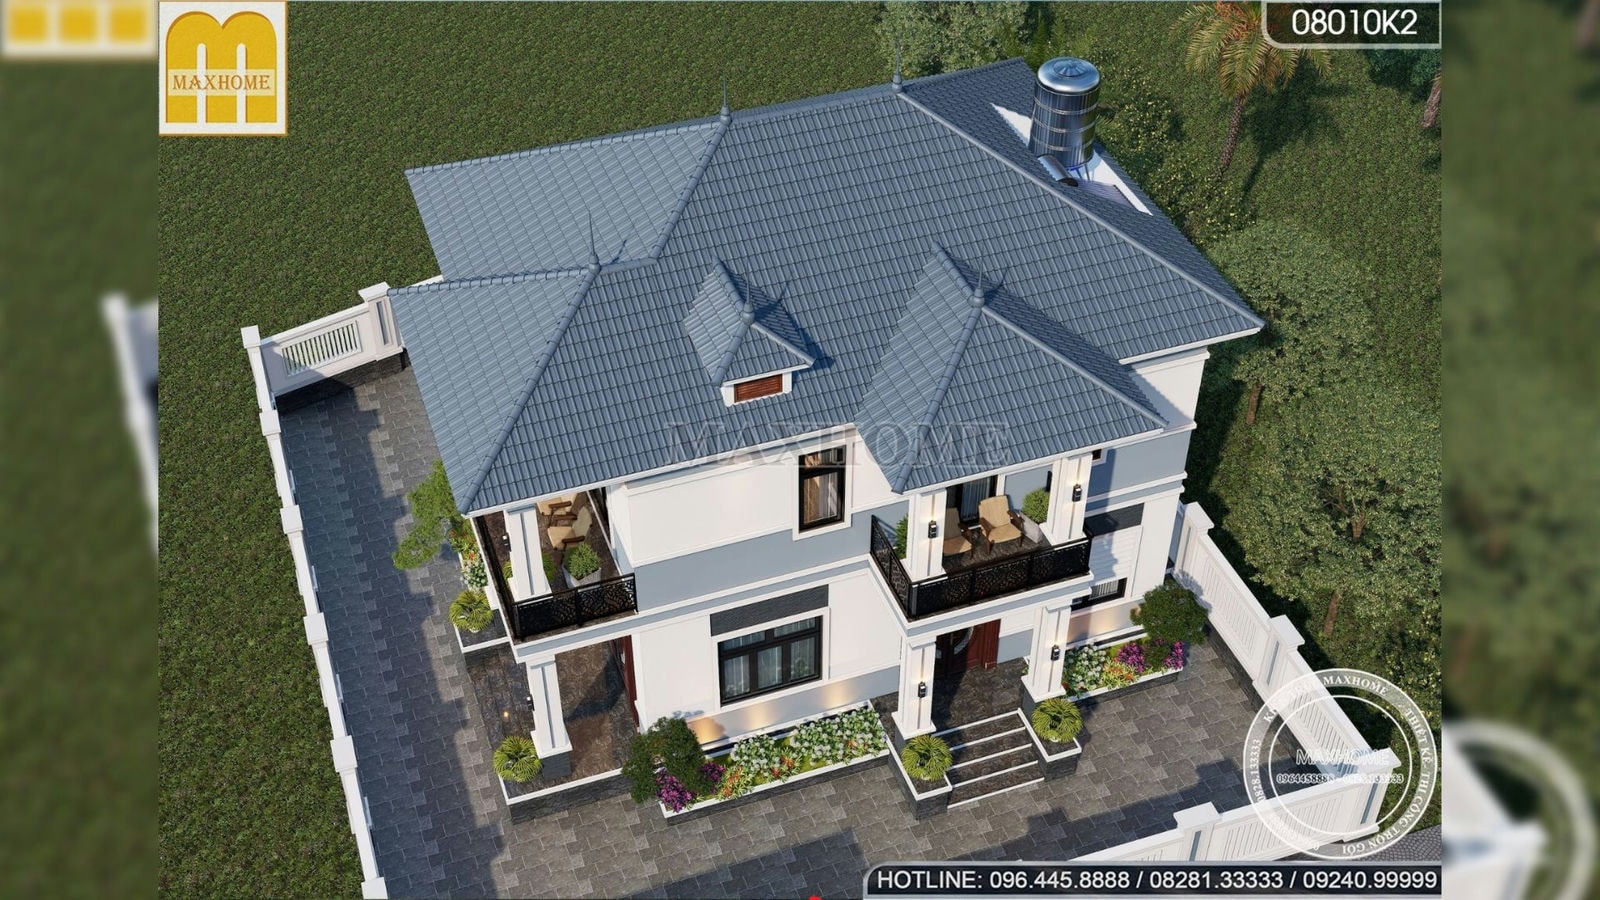 Mẫu nhà mái Nhật 2 tầng với 3 phòng ngủ cực rộng giá từ 1,3 tỷ | MH02586